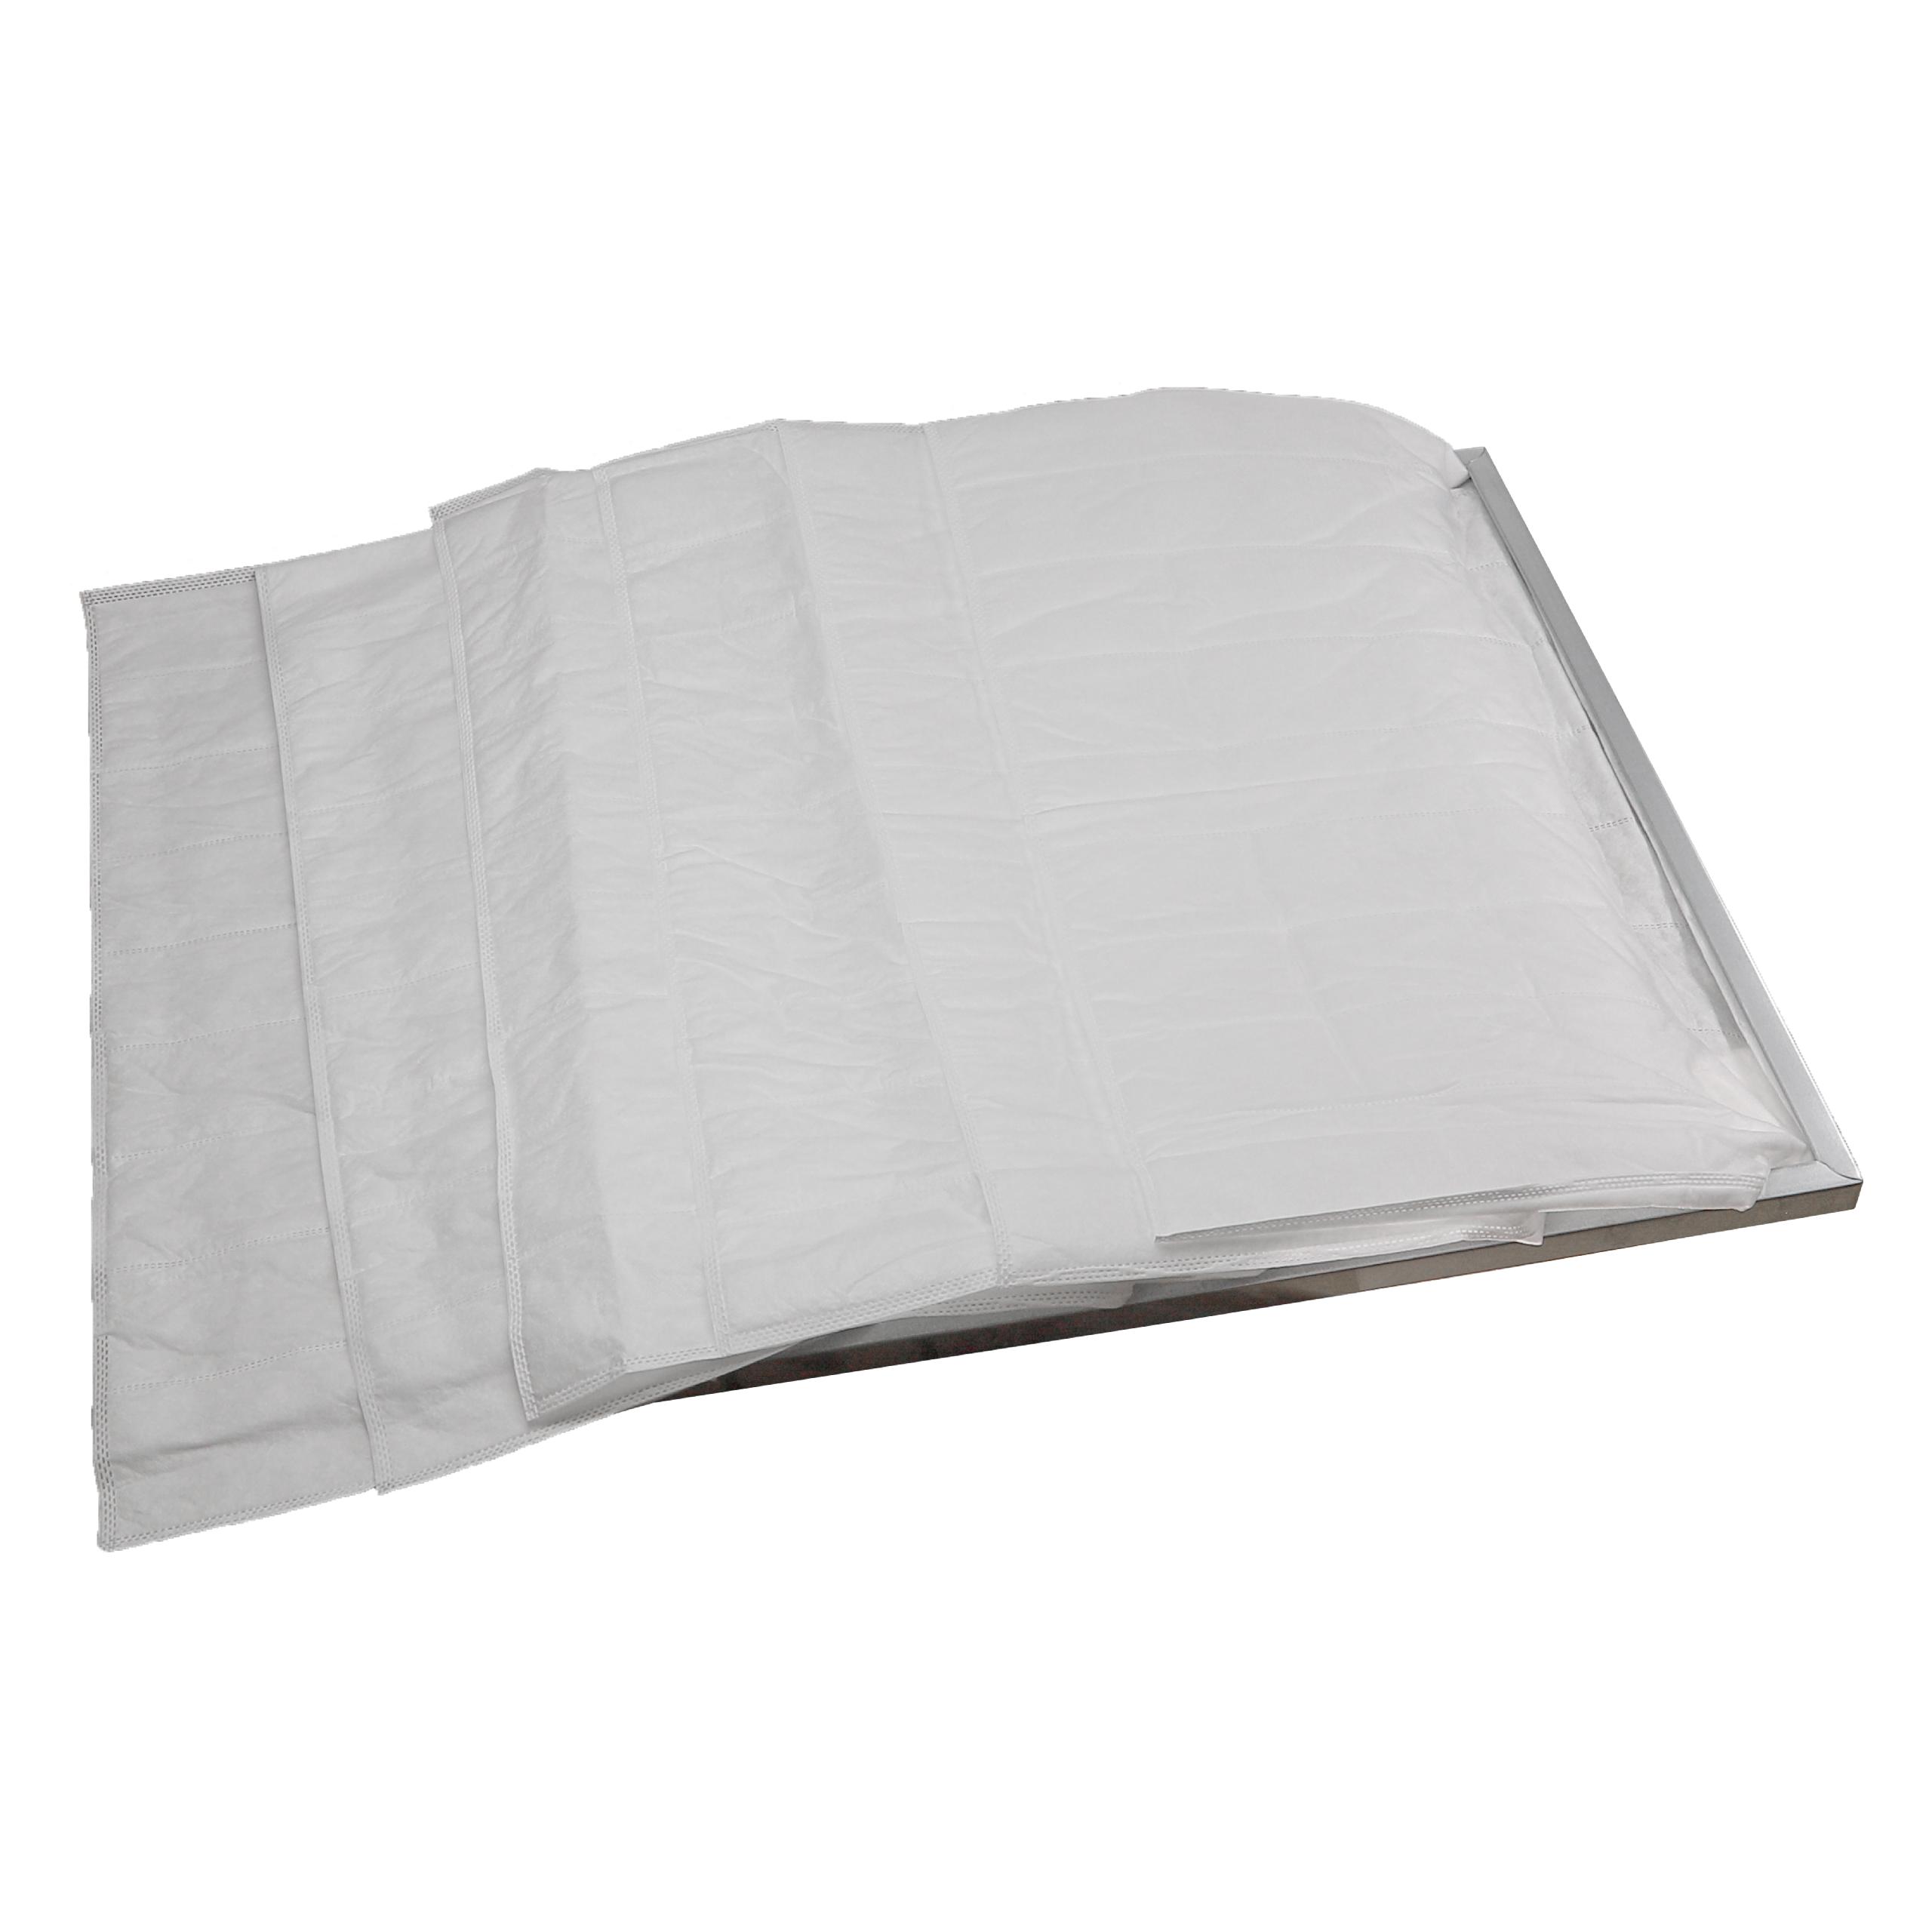 Taschenfilter G4 passend für Klimaanlagen, Lüftungsanlagen - 36 x 59,2 x 59,2 cm